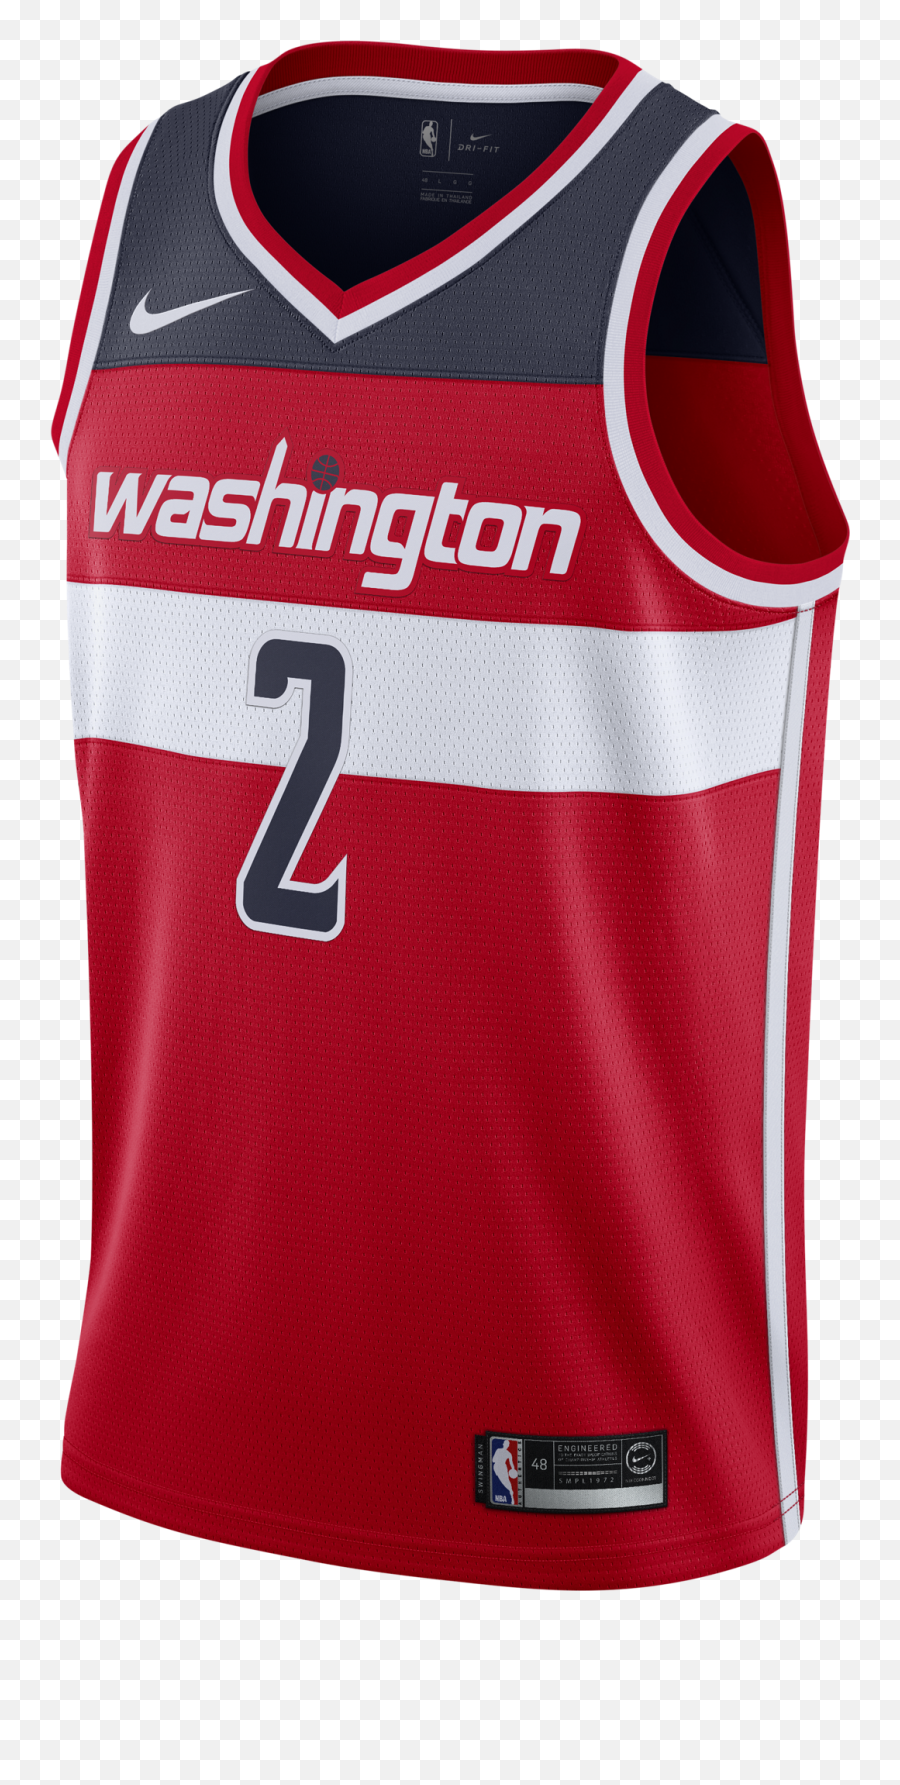 Nike Nba Washington Wizards John Wall - John Wall Jersey Png,John Wall Png